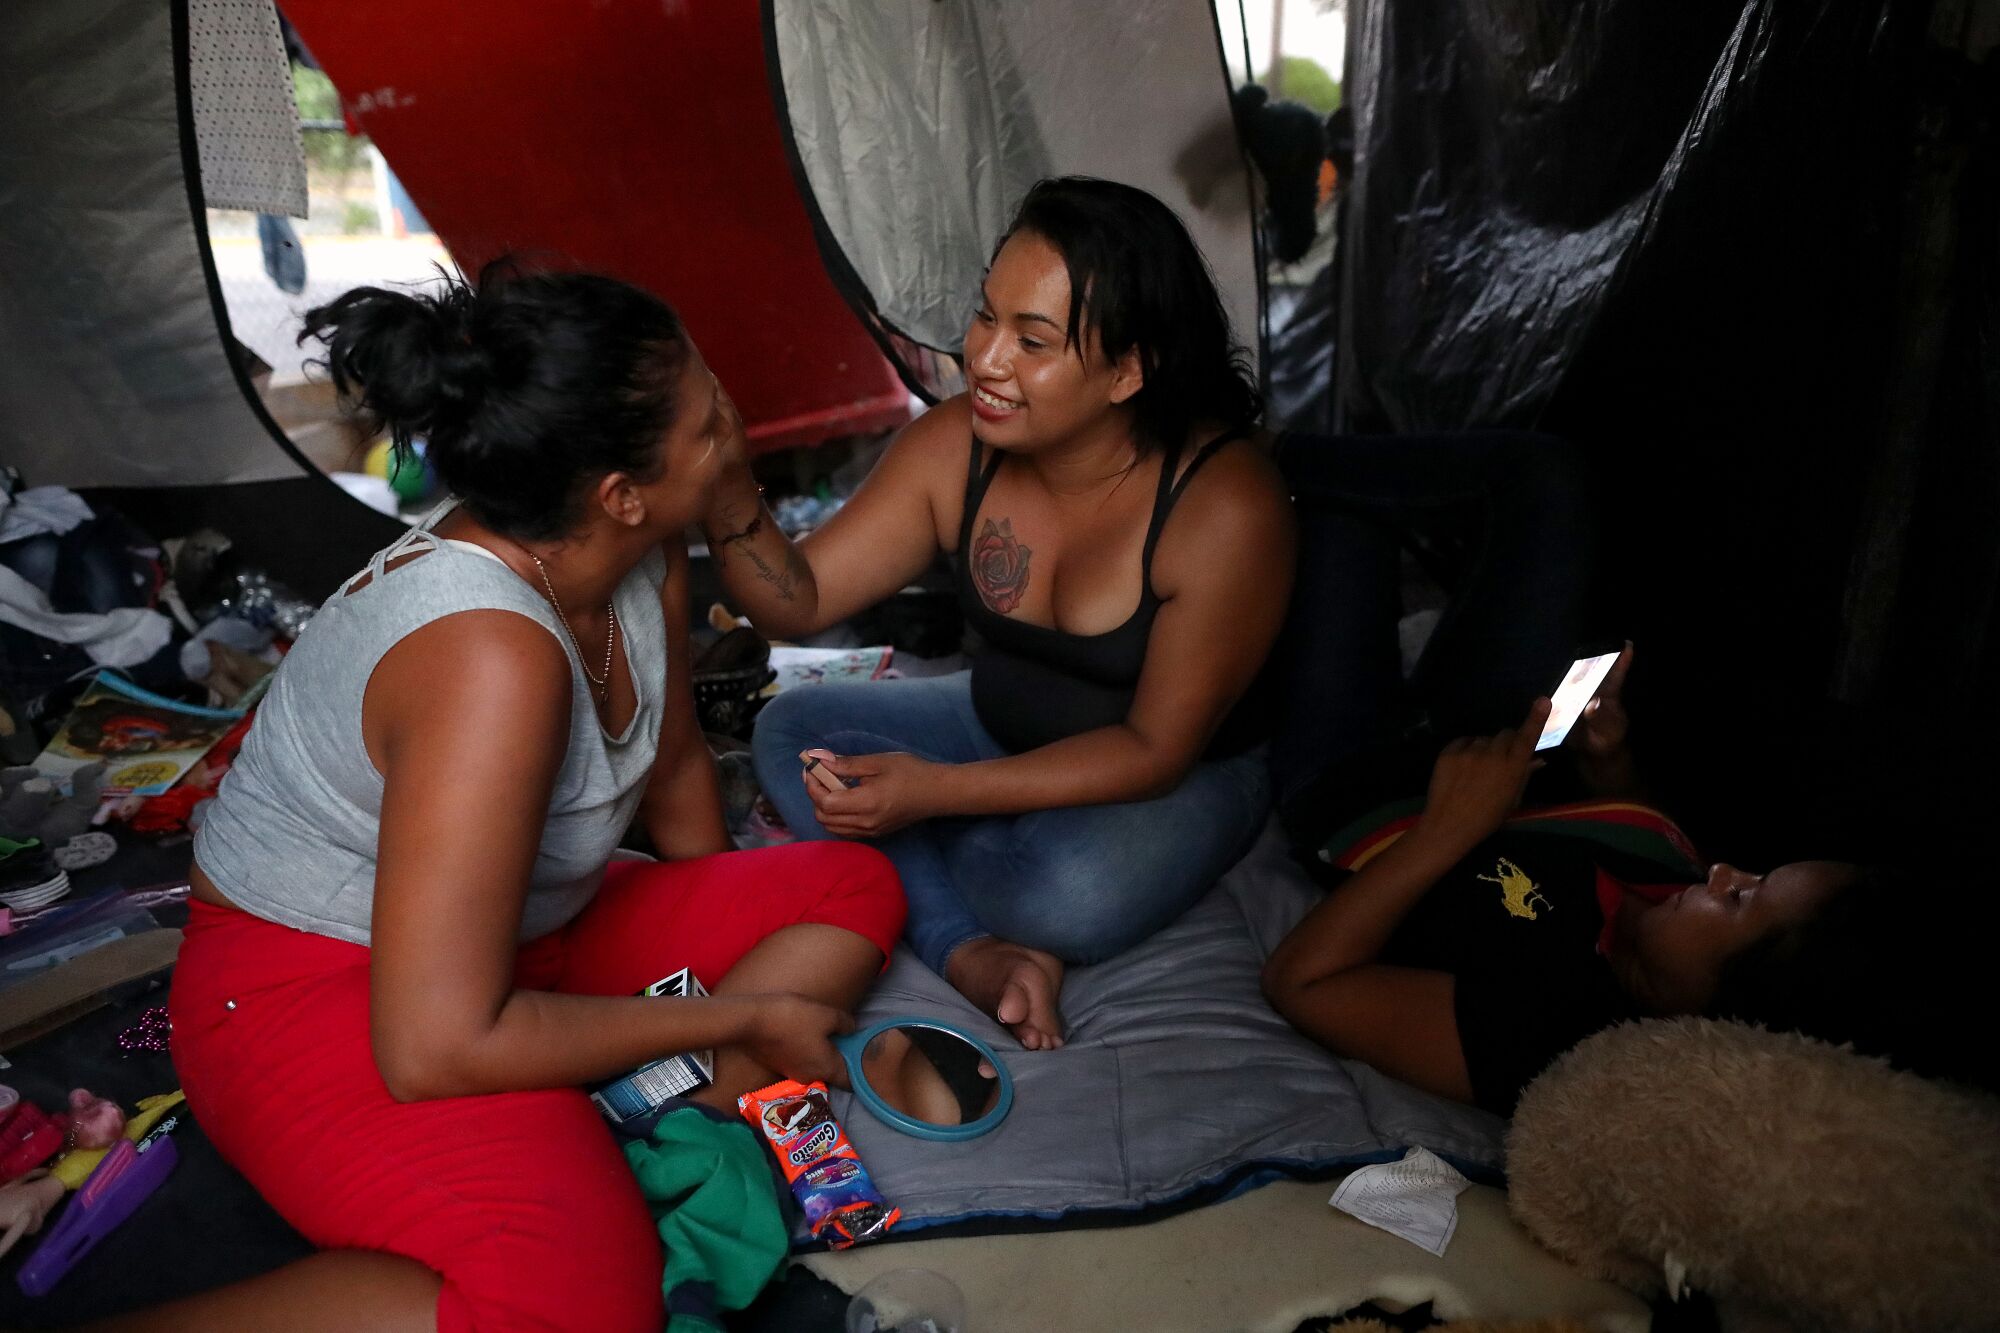 Mayela Villegas applies makeup on Johana Orellana in her tent in Matamoros, Mexico